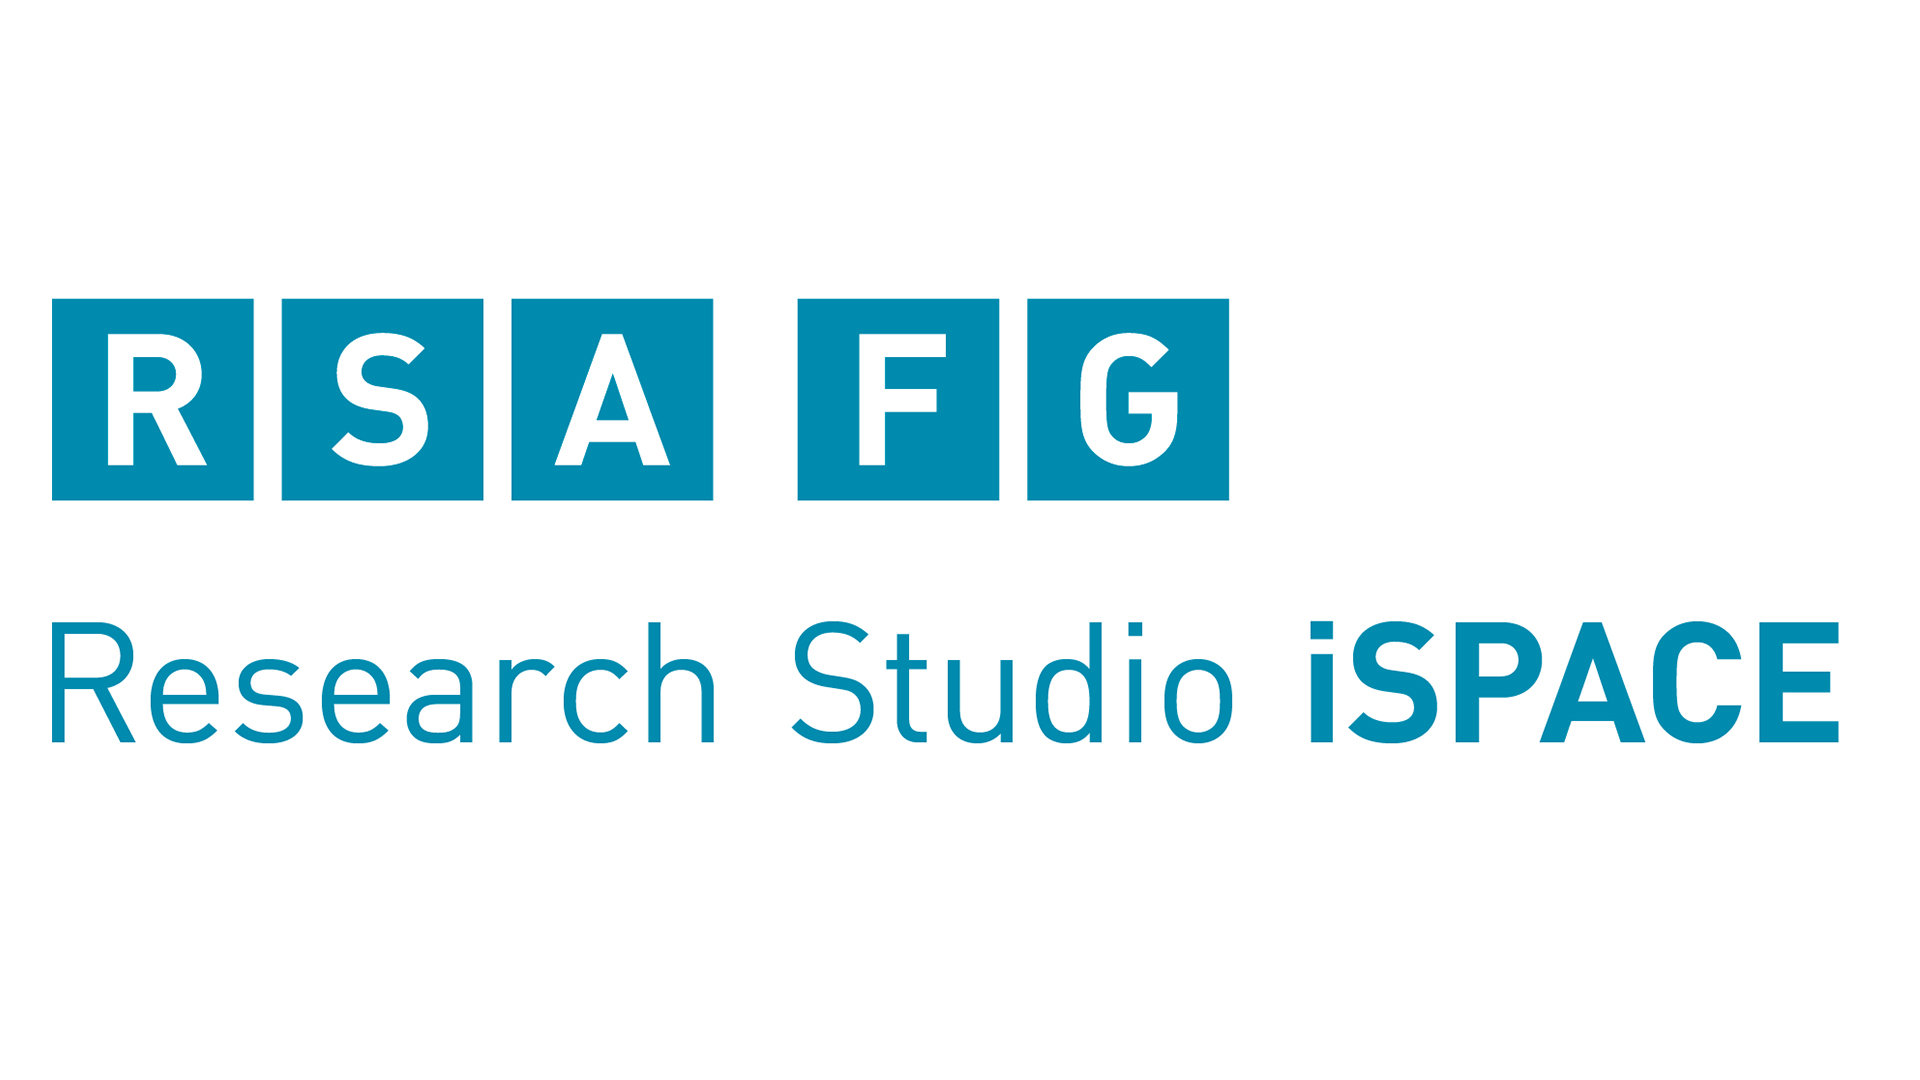 RSA FG Research Logo